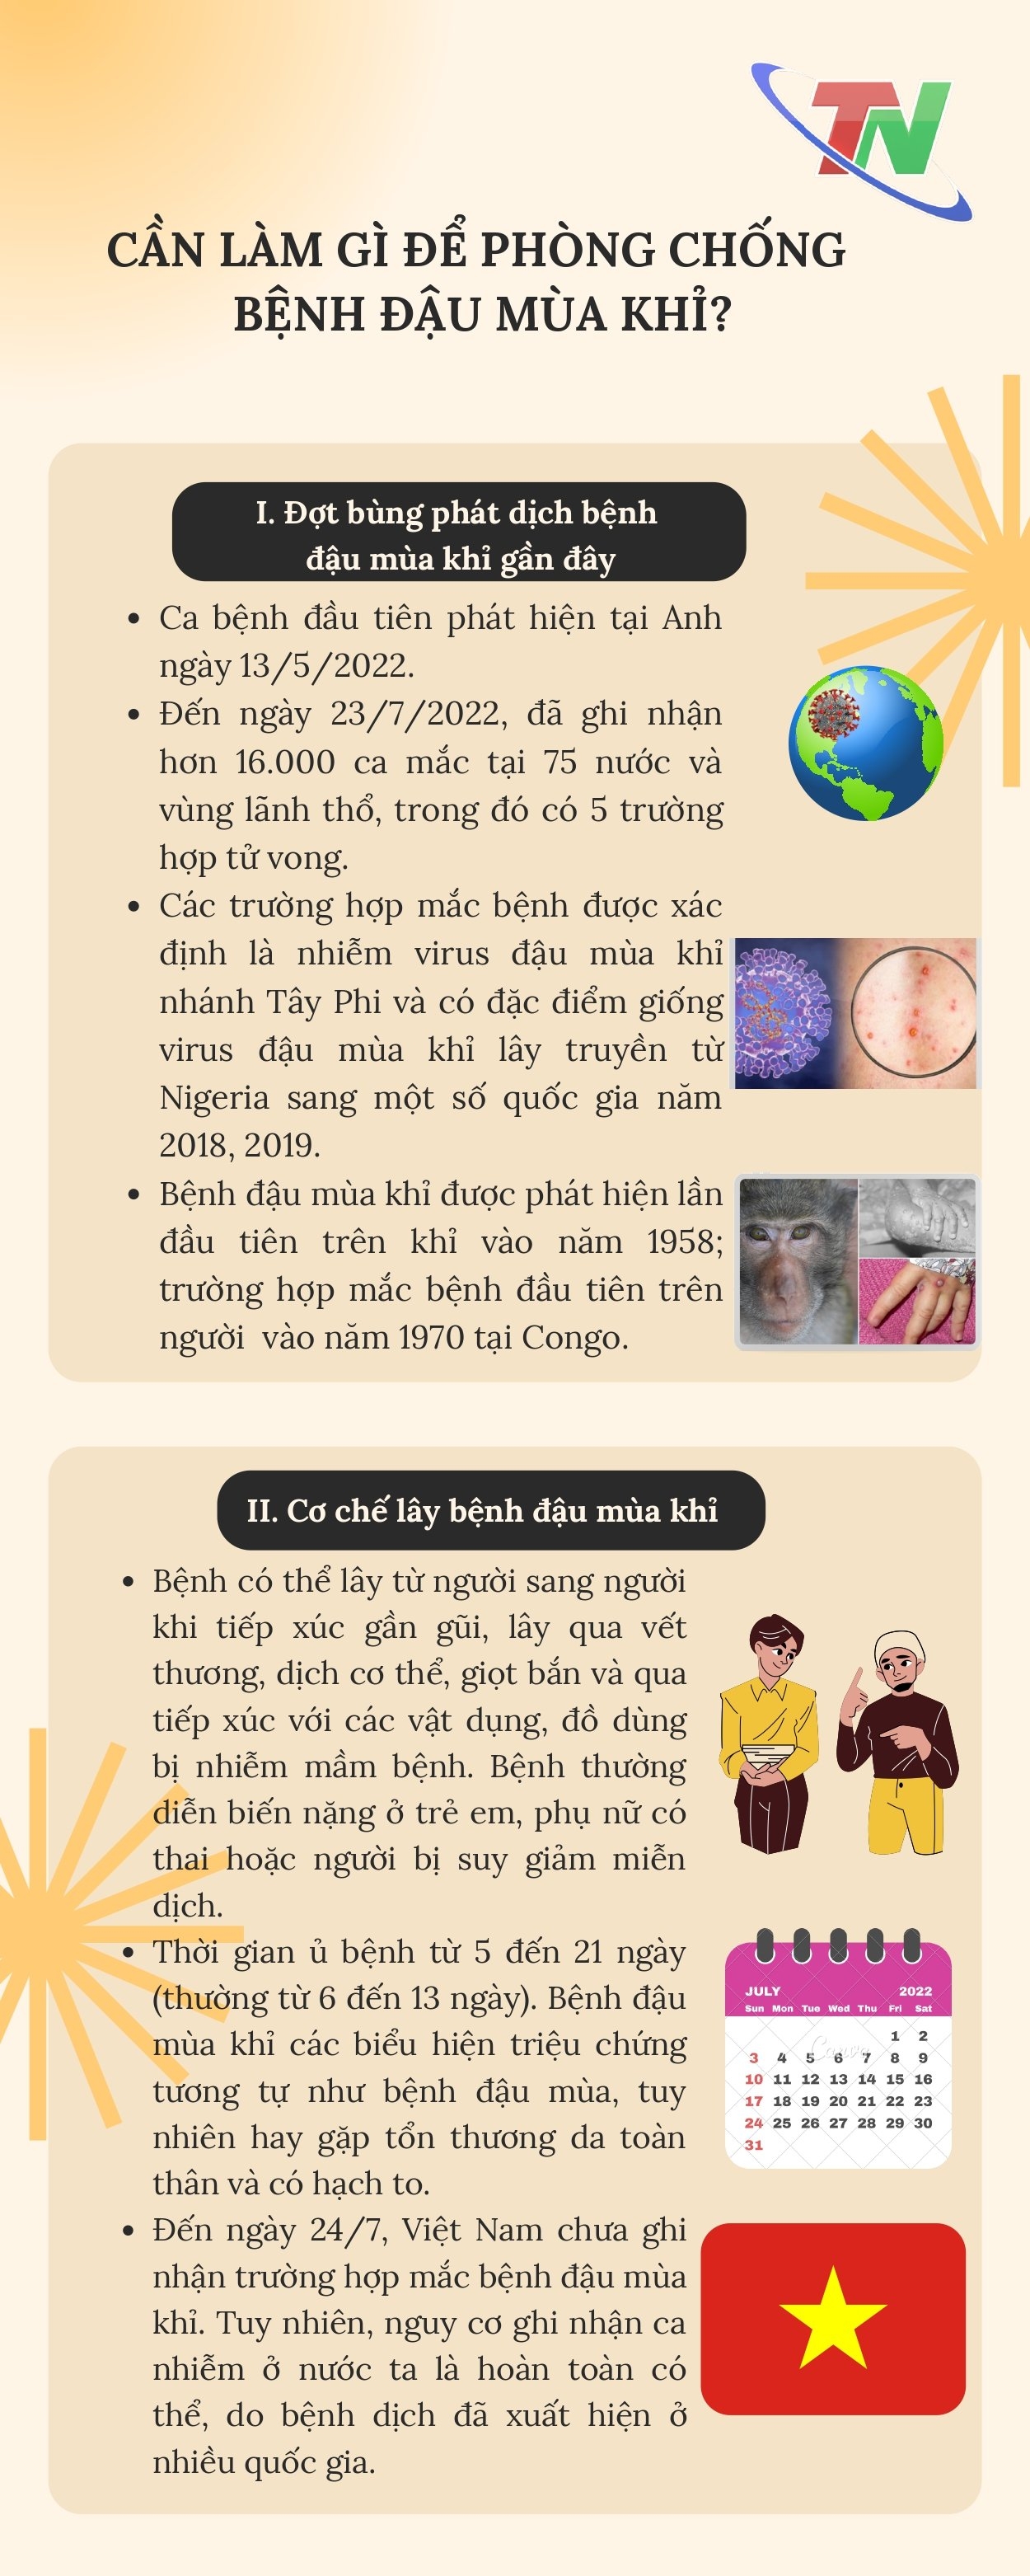 [Infographic] Cần làm gì để phòng, chống bệnh đậu mùa khỉ?